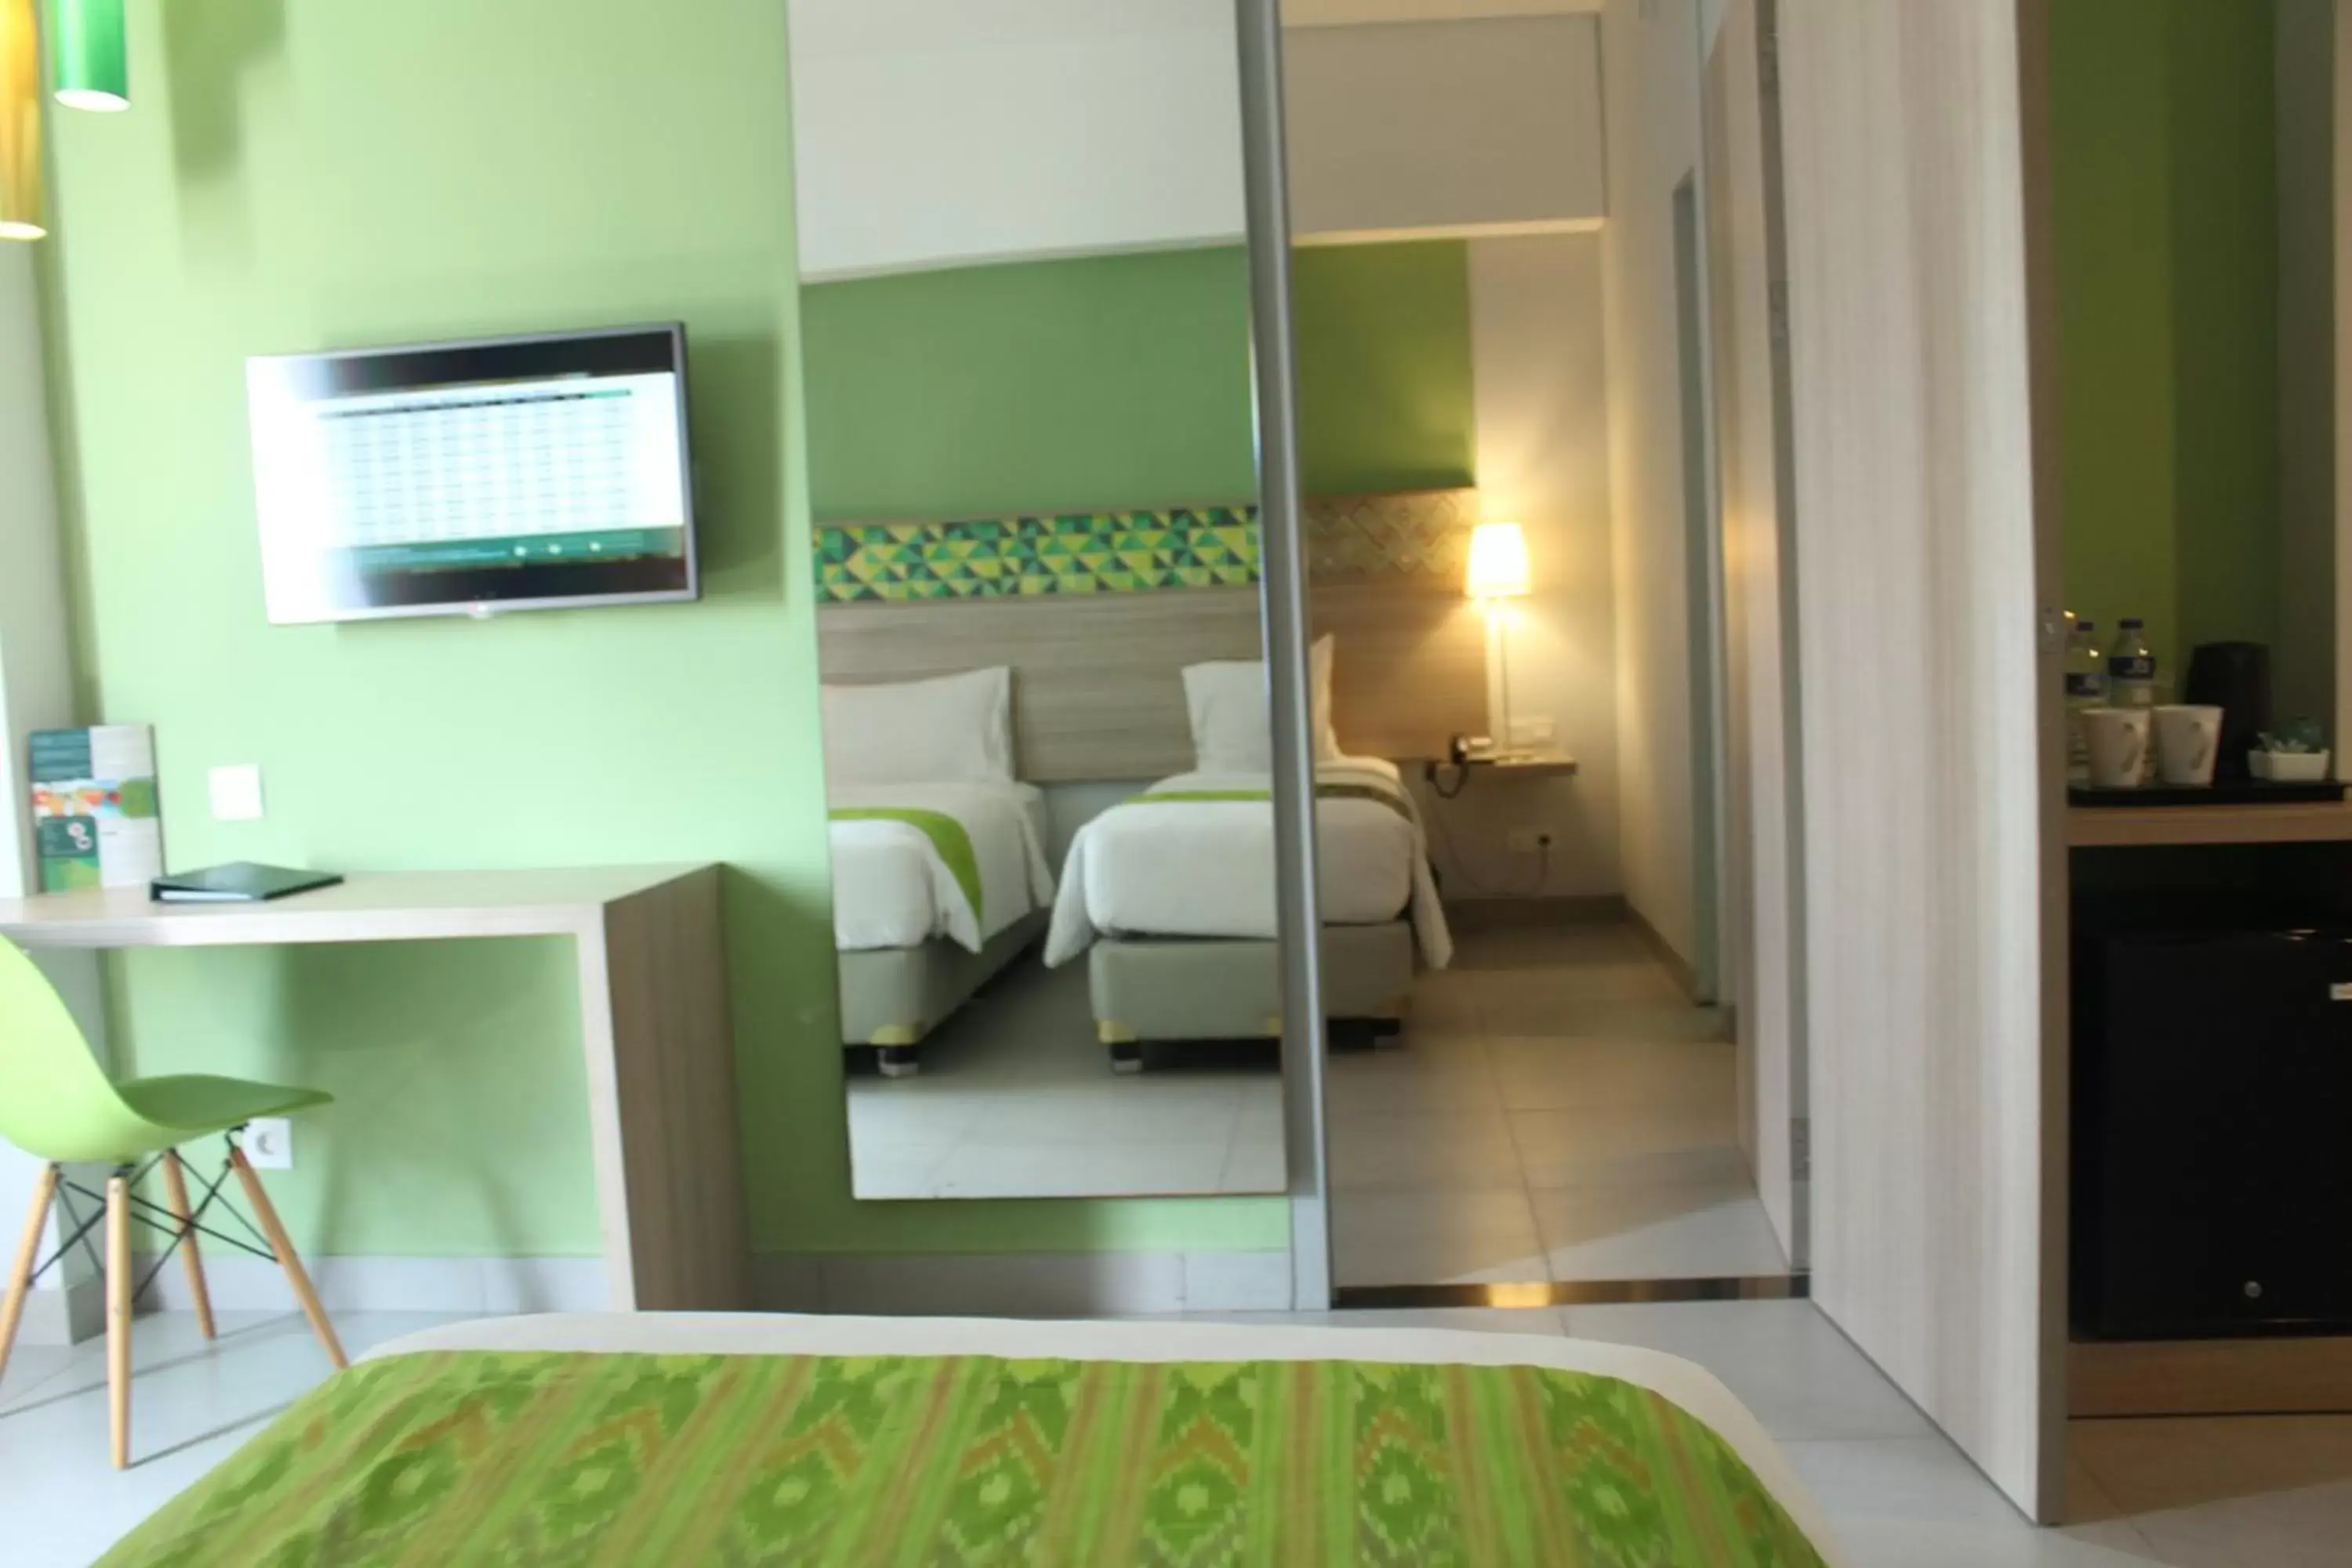 Bed in KHAS Makassar Hotel